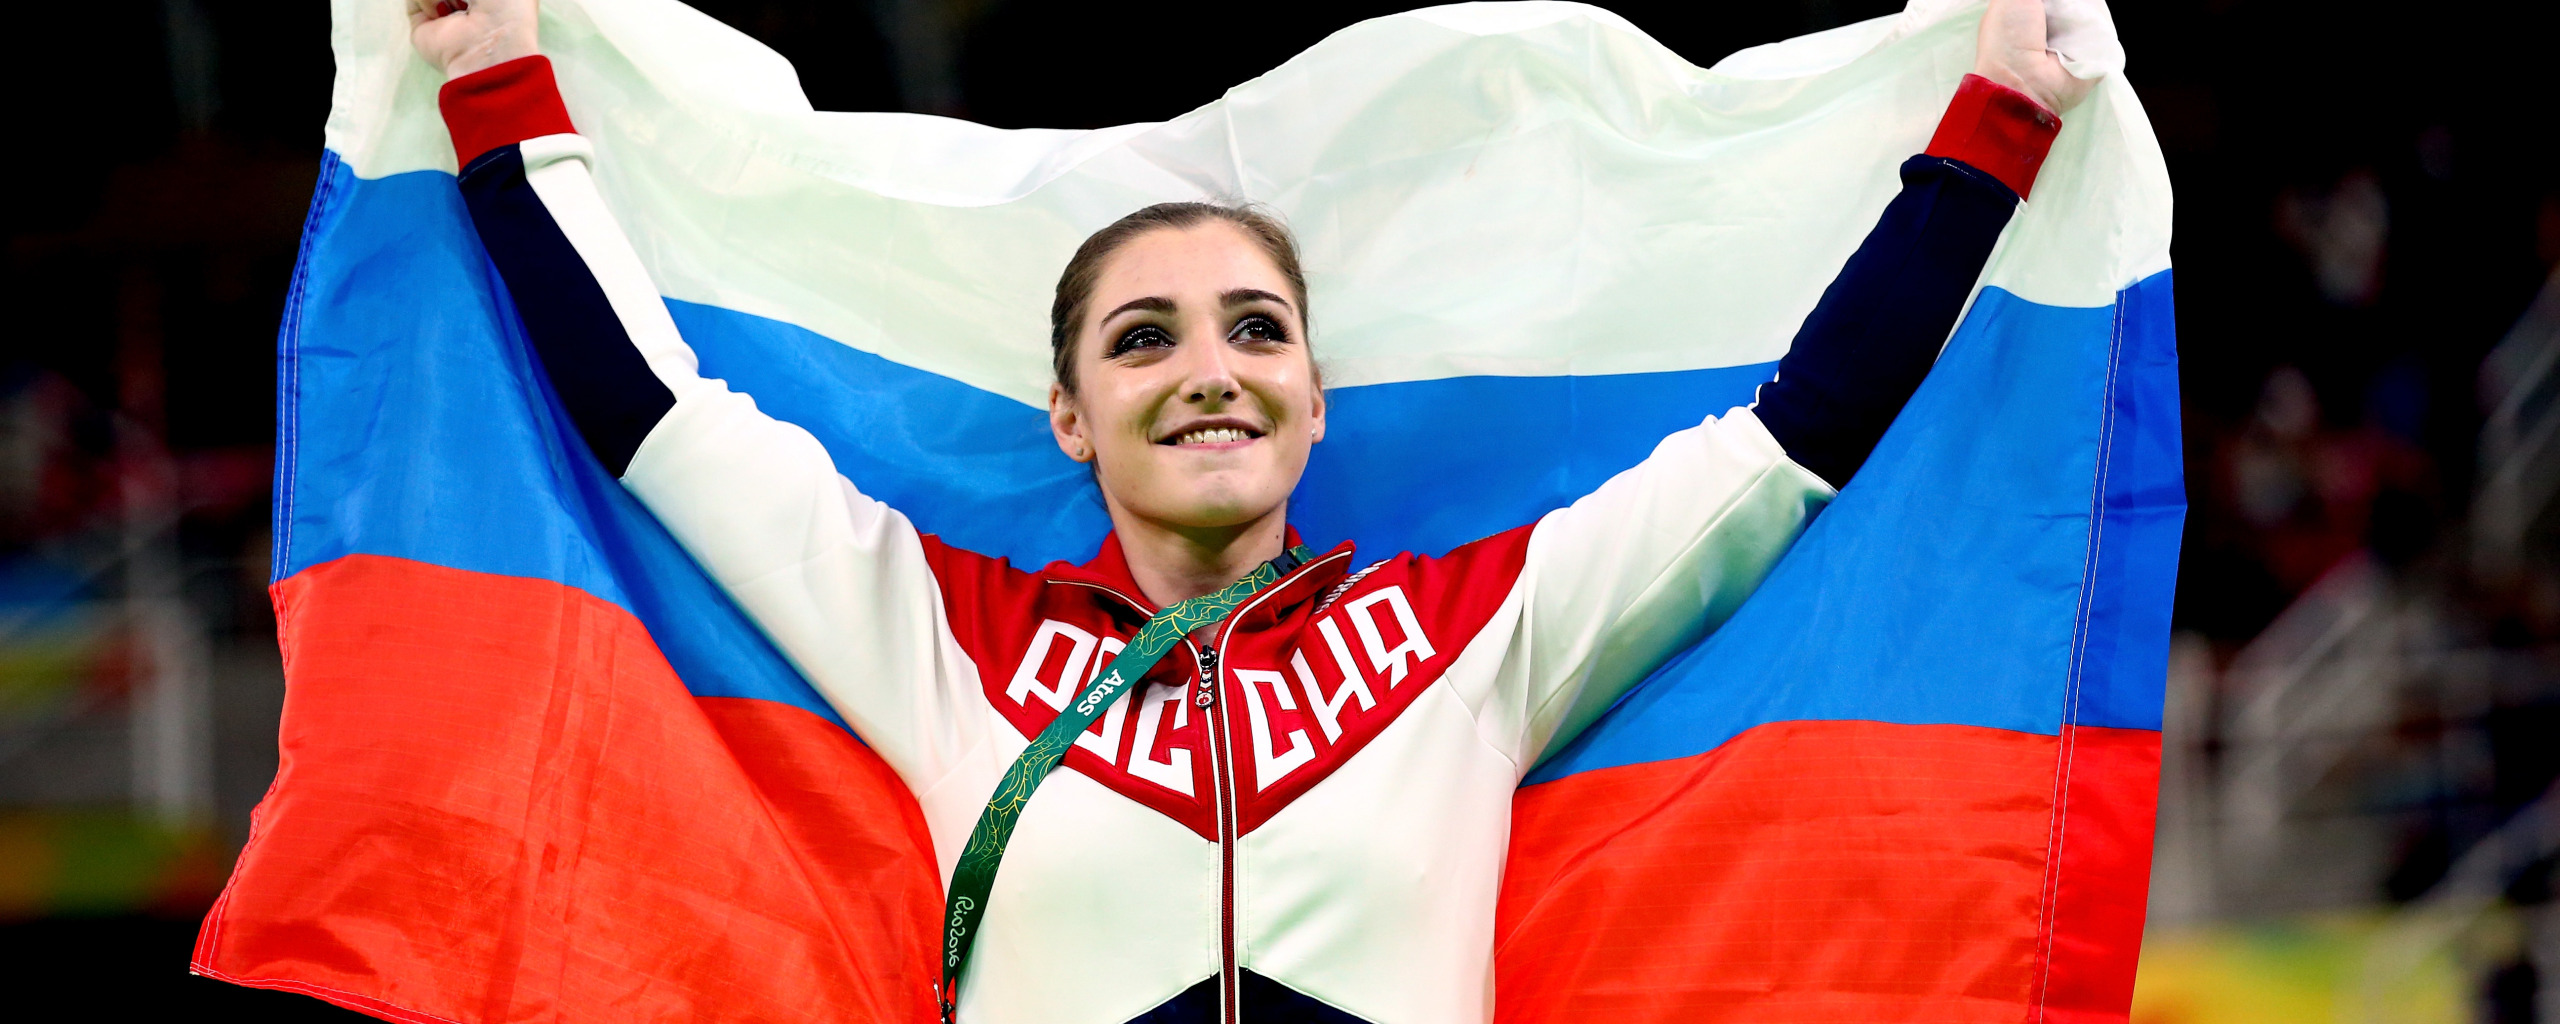 Самые красивые девушки Сочи. Власов с флагом на Олимпиаде. Олимпийский флаг России.